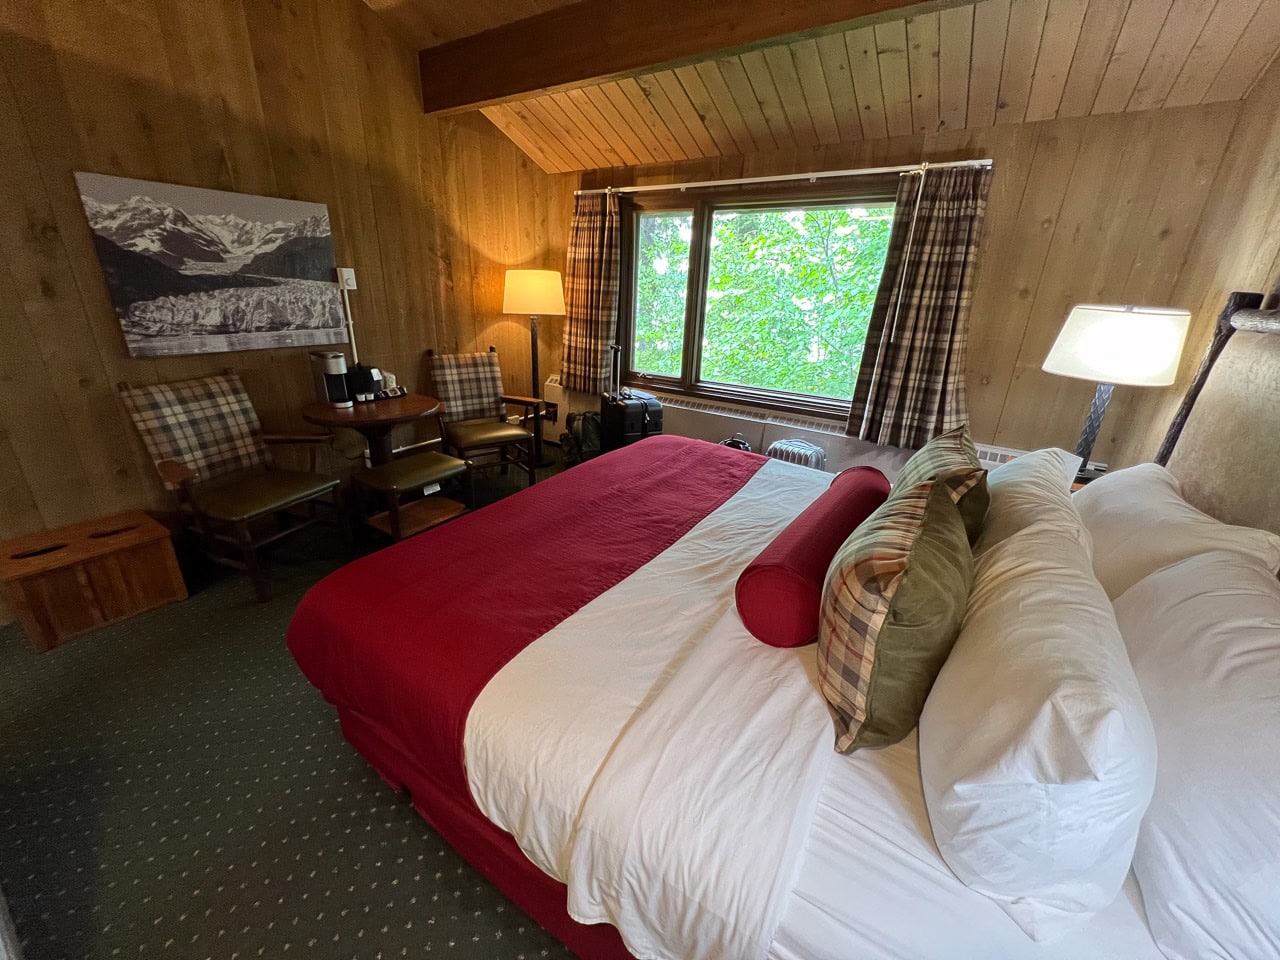 Room at the Glacier Bay Lodge in Glacier Bay National Park